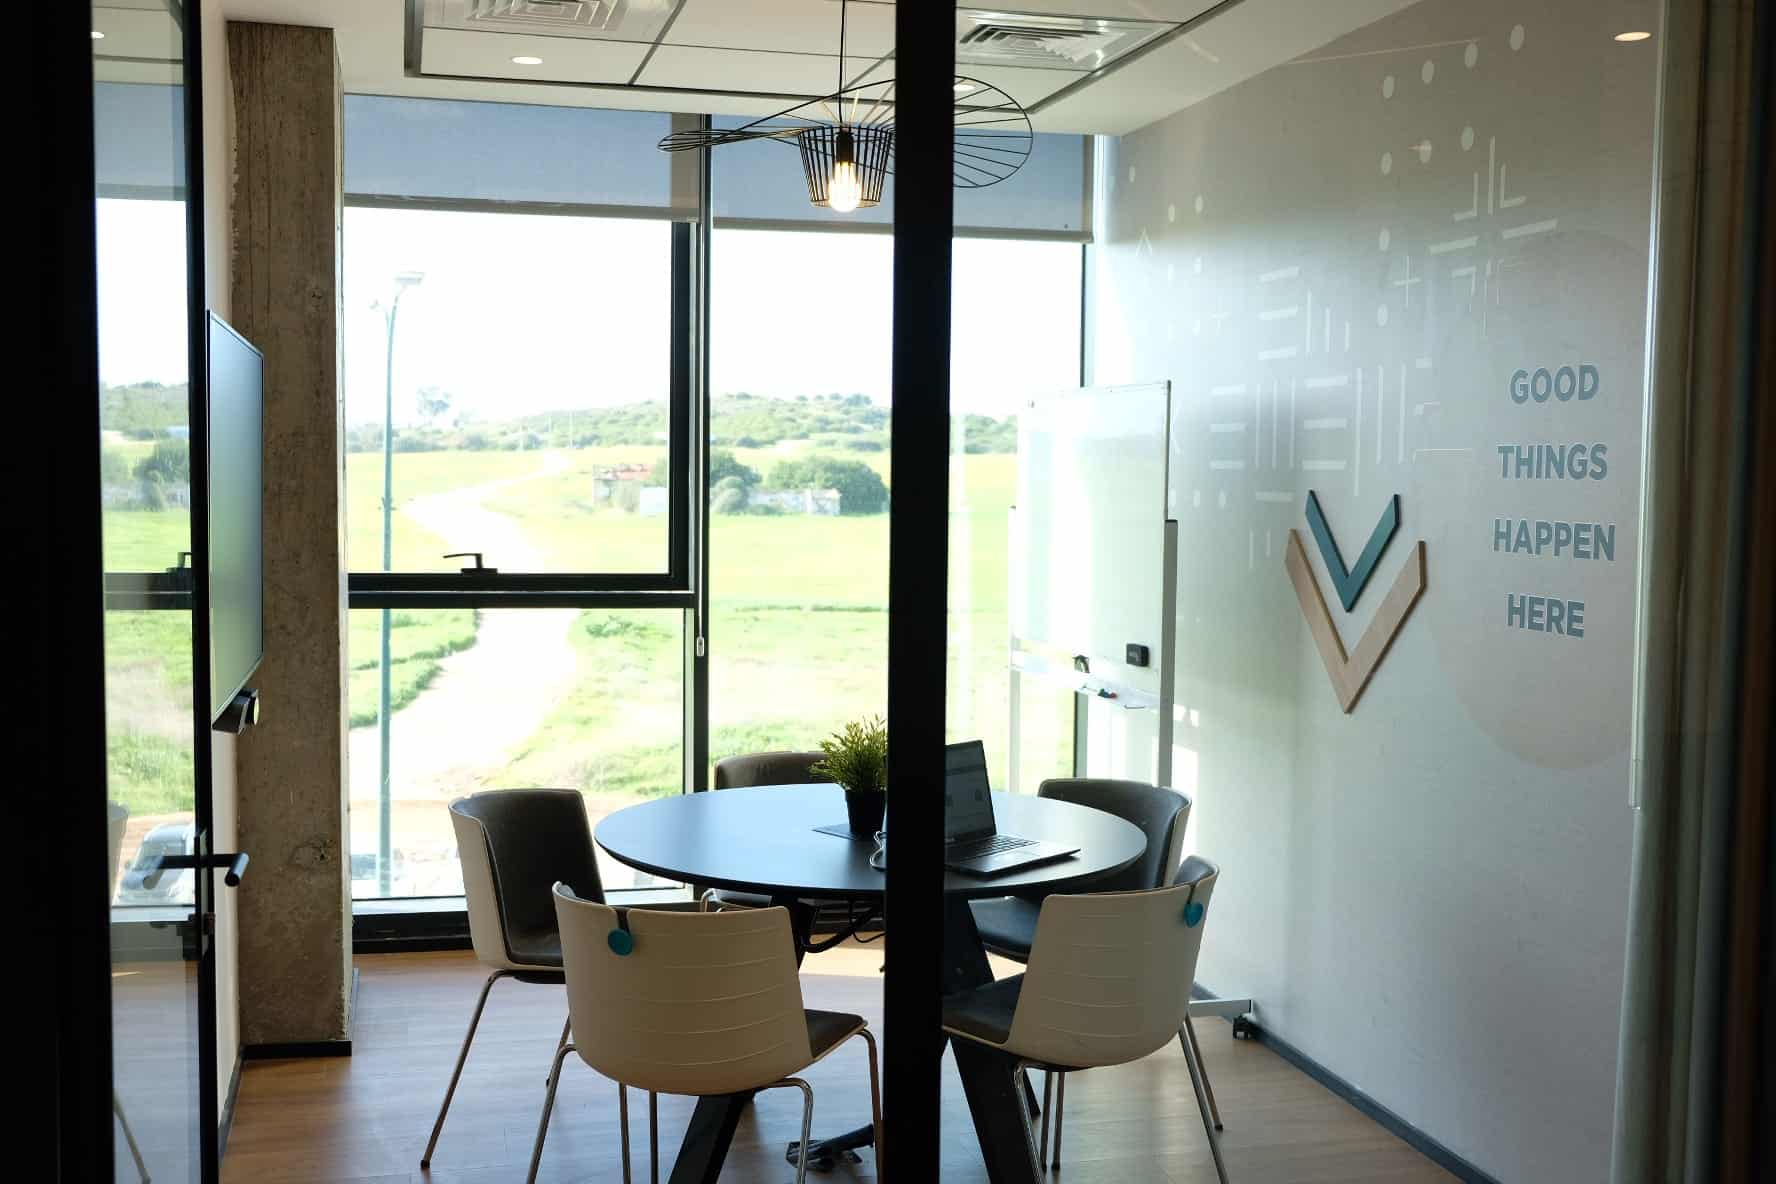 חדר ישיבות להשכרה conference room 2 עם מערכת וידאו קונפרנס, מעולה לישיבות הנהלה מצומצמות.